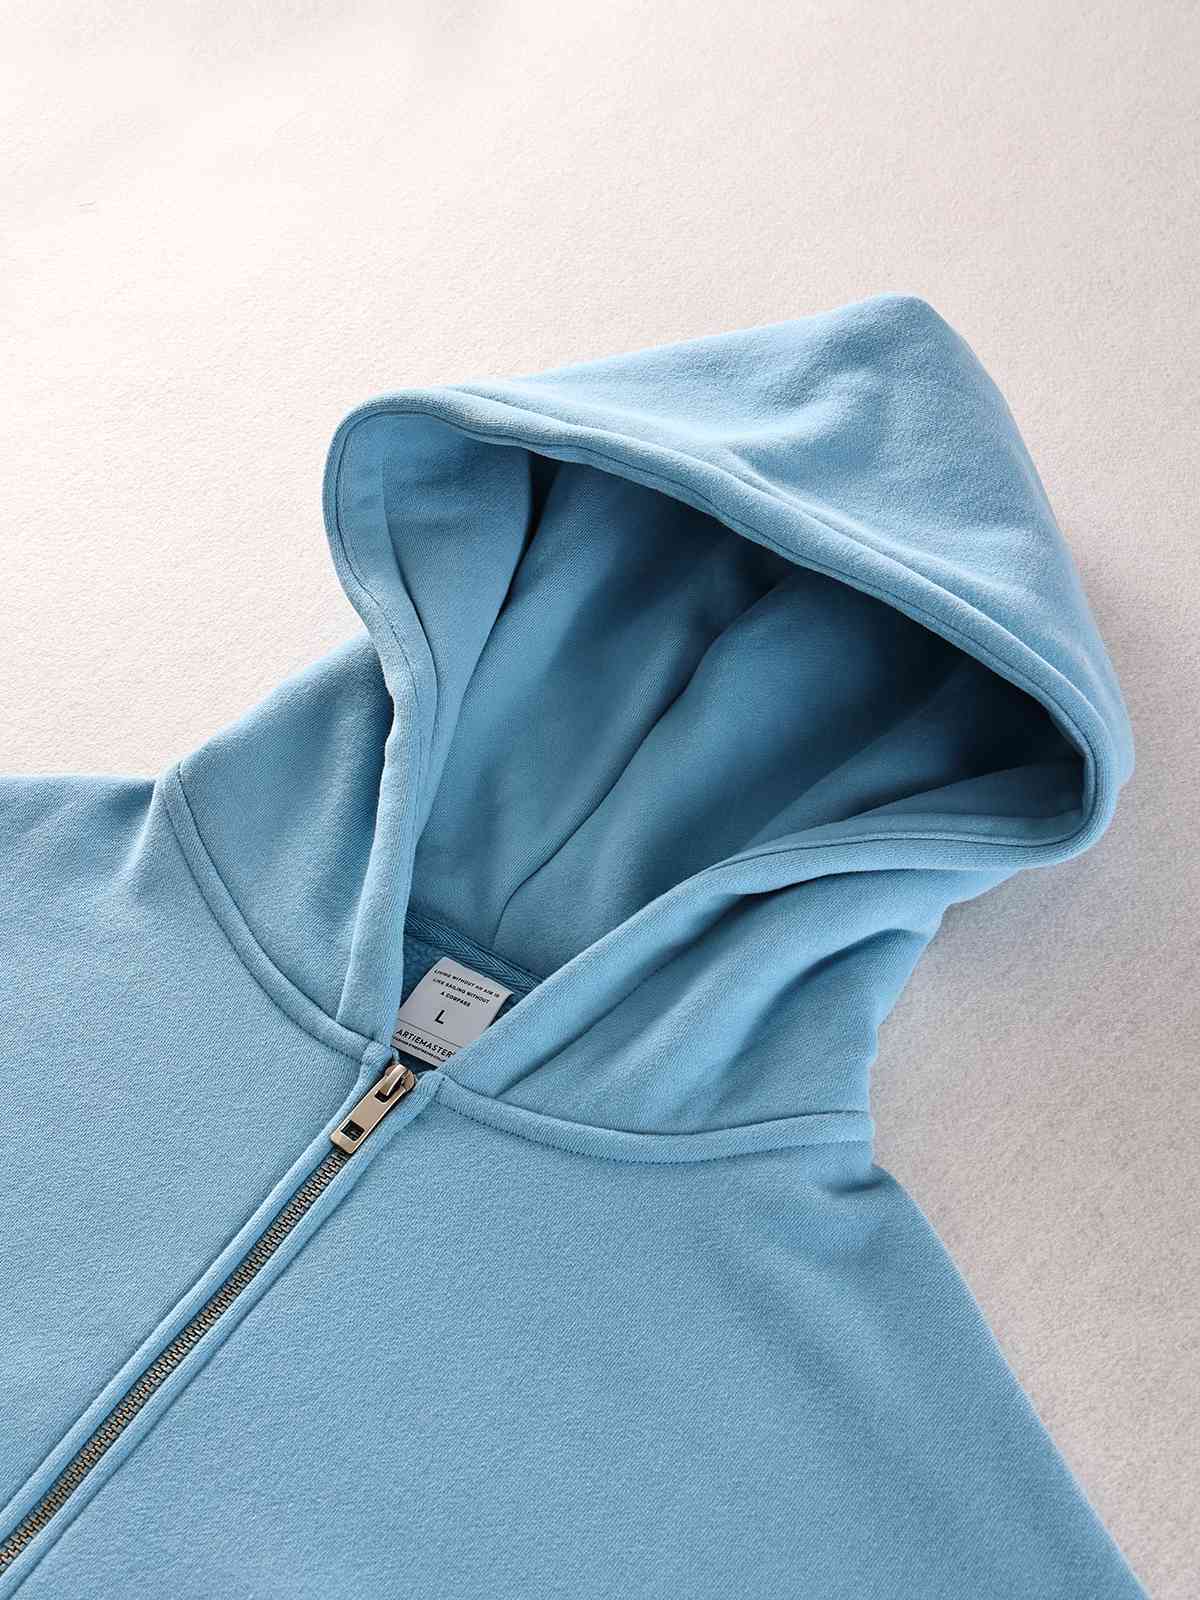 Hood and collar display of sky blue zip-up hoodie